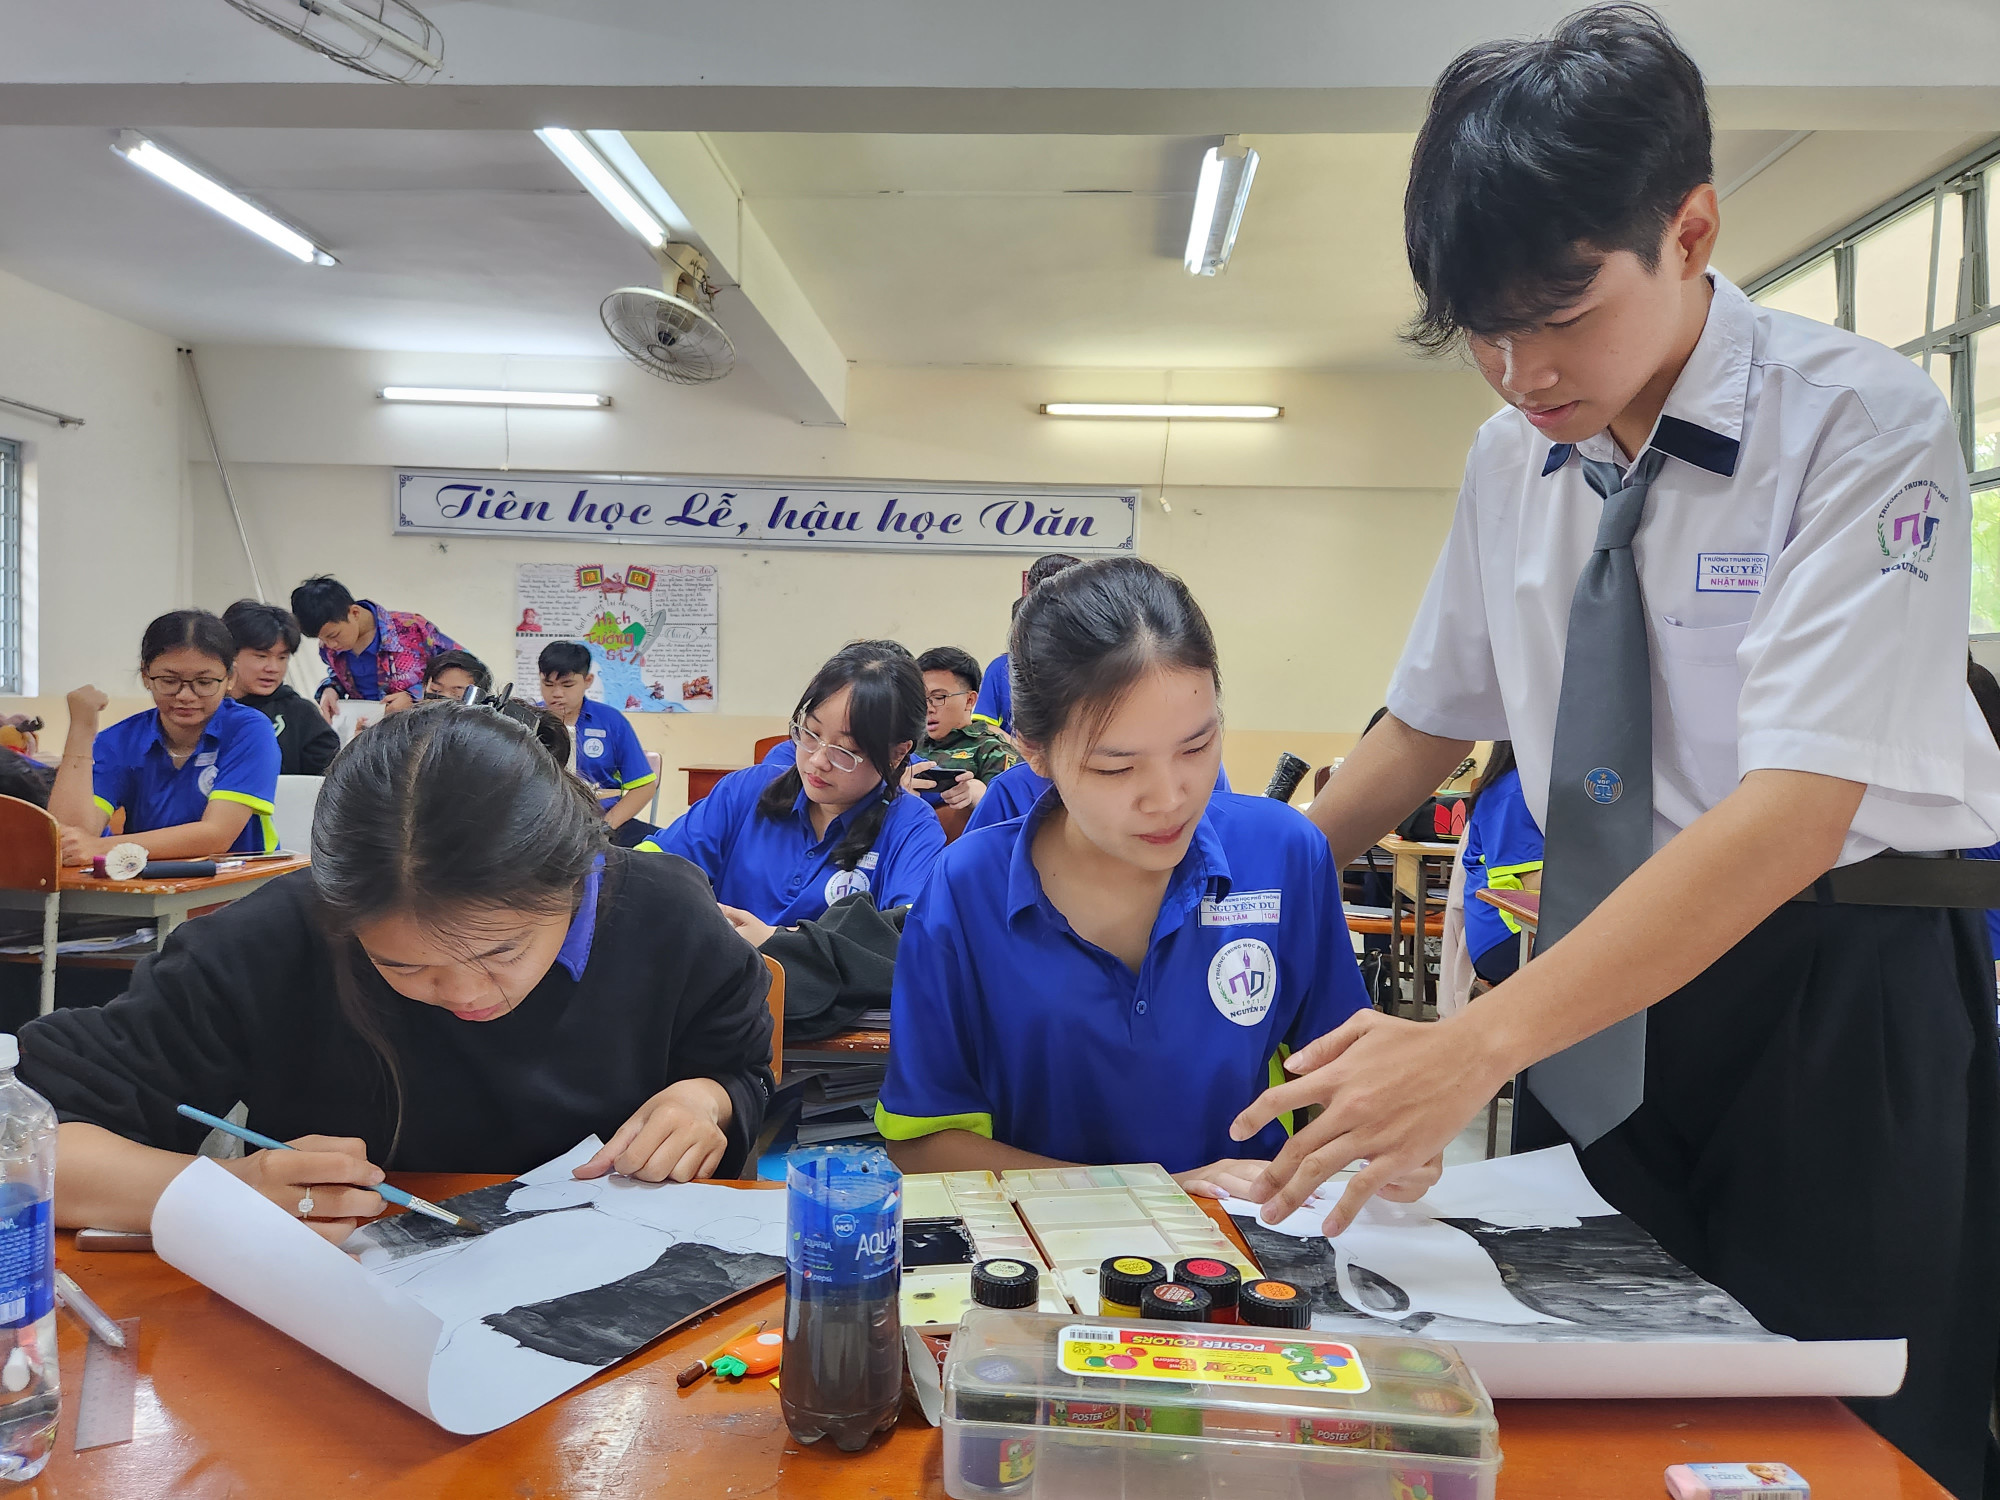 Nguyễn Huỳnh Nhật Minh sắm vai giáo viên mỹ thuật lớp 10A6